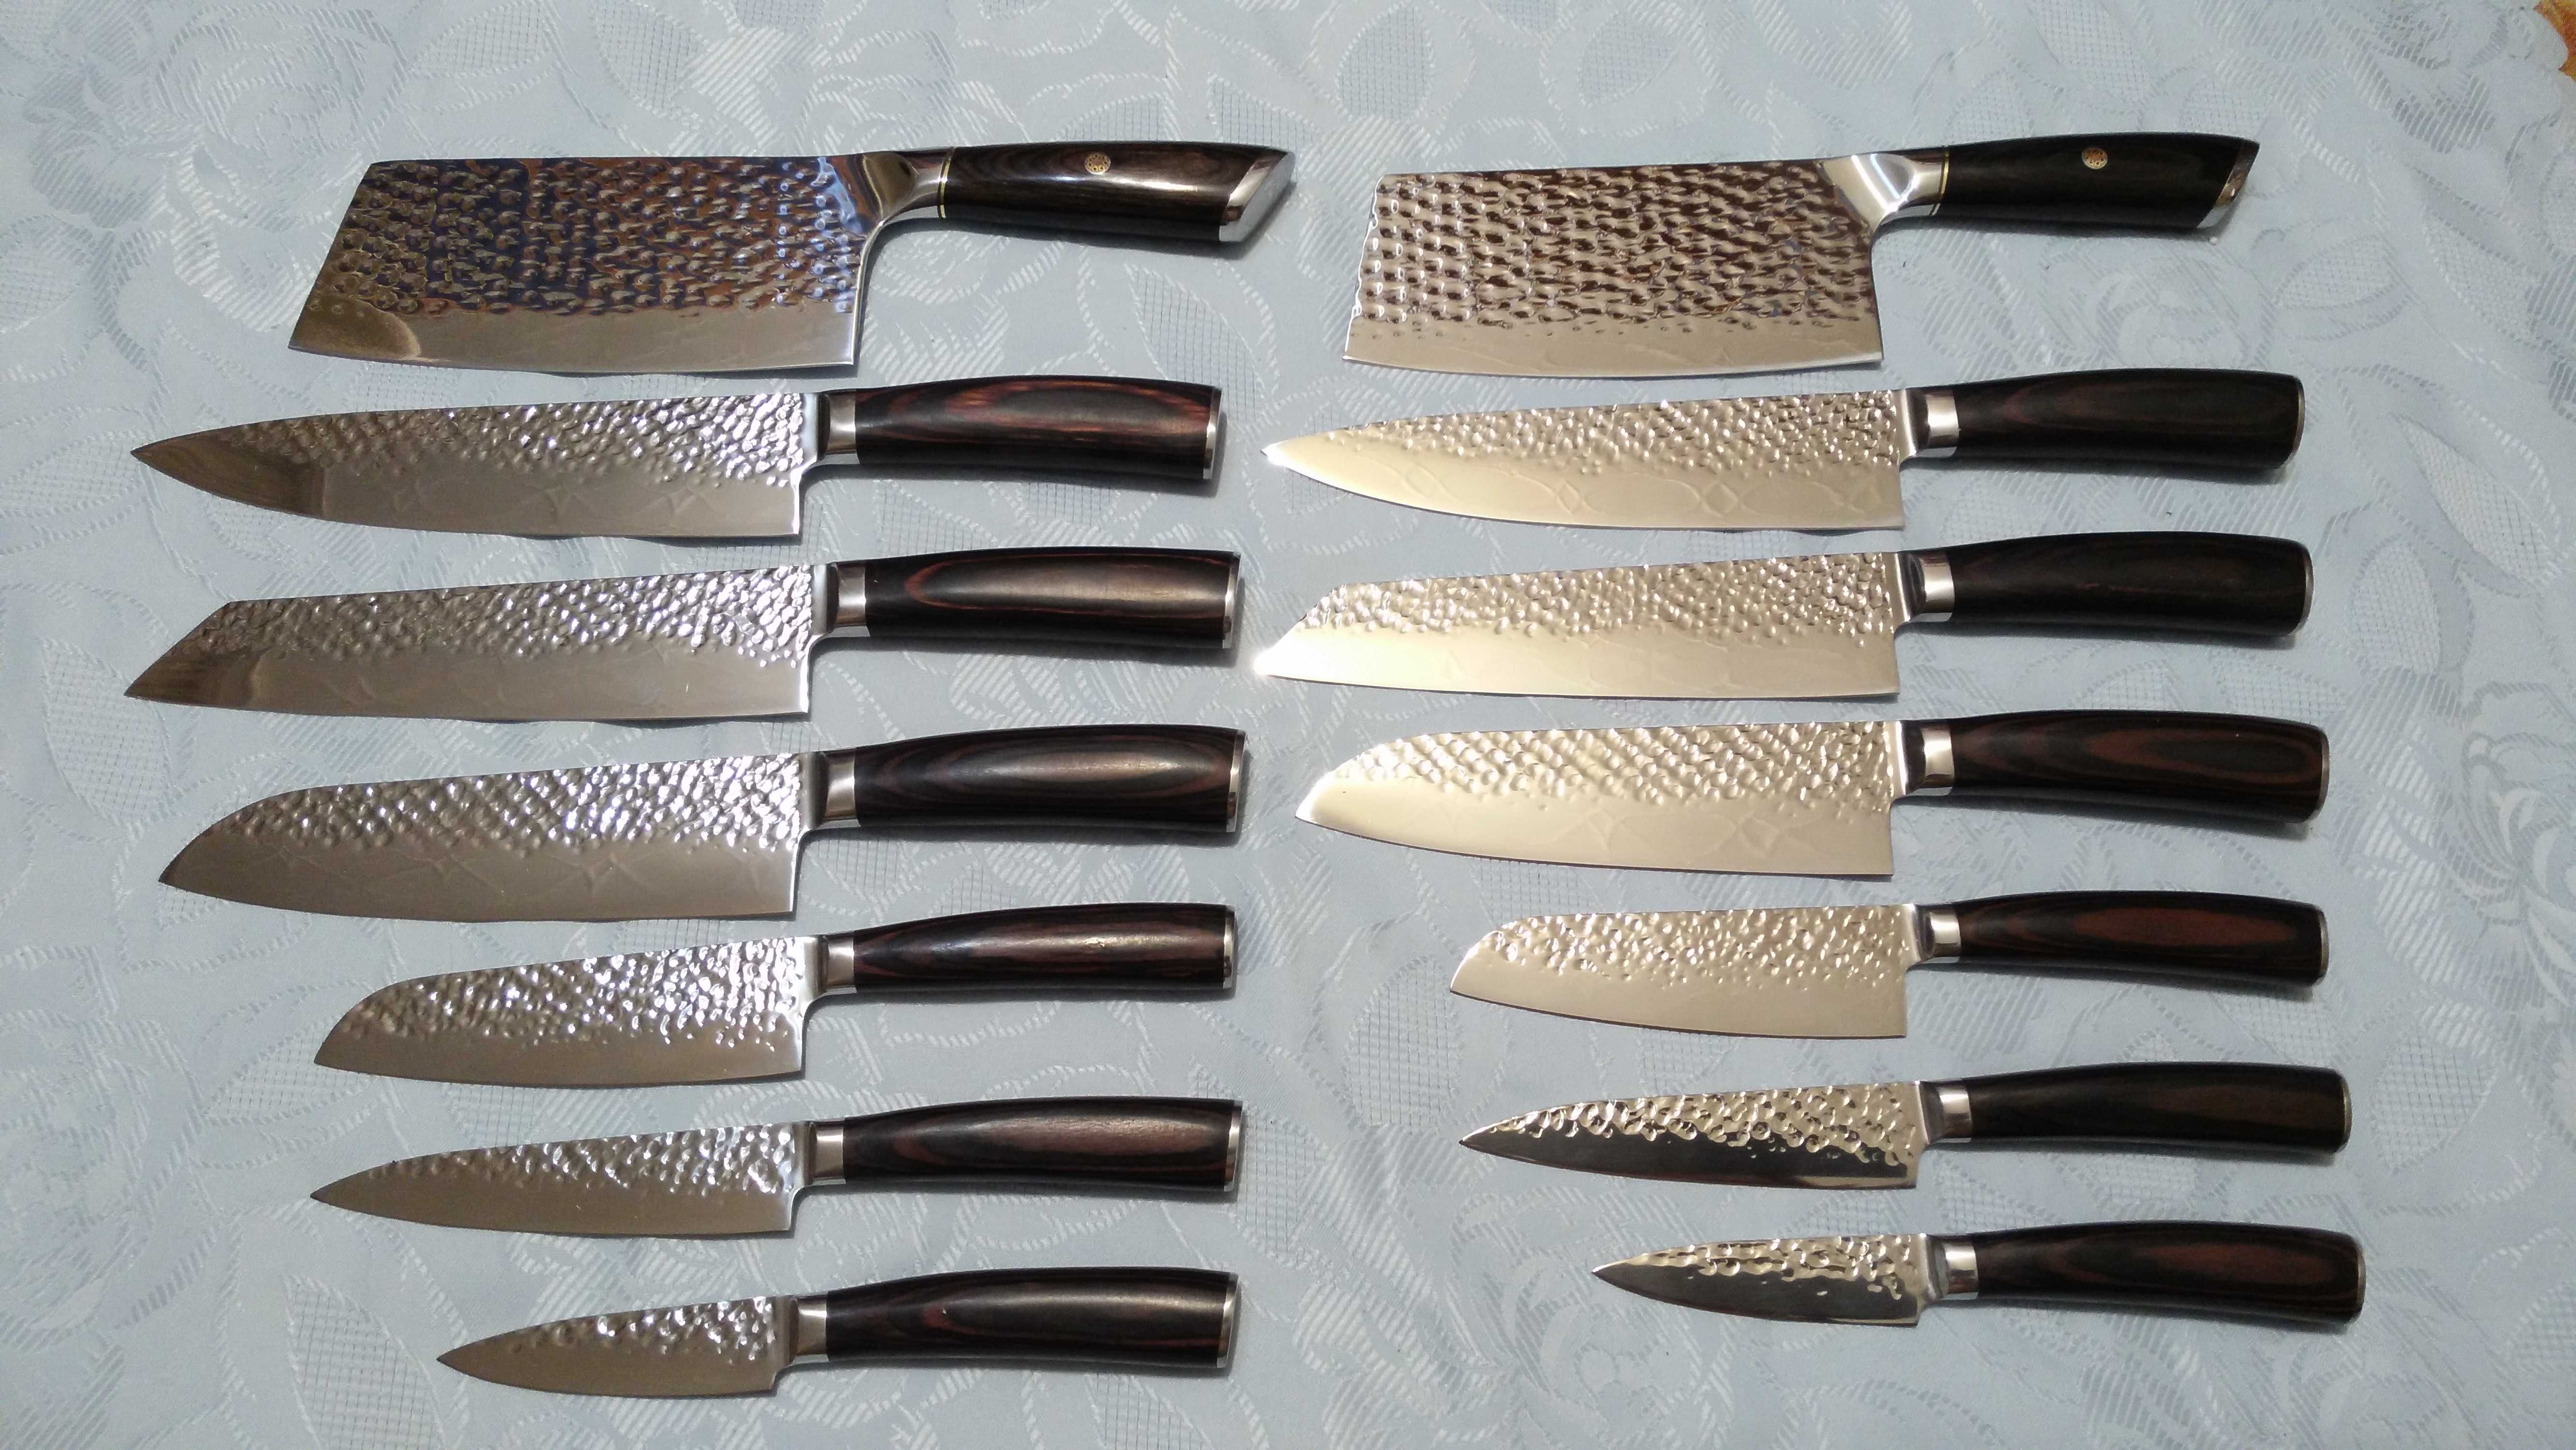 Профессиональные кухонные ножи (сталь 440С, 58-60 HRC единиц твердости